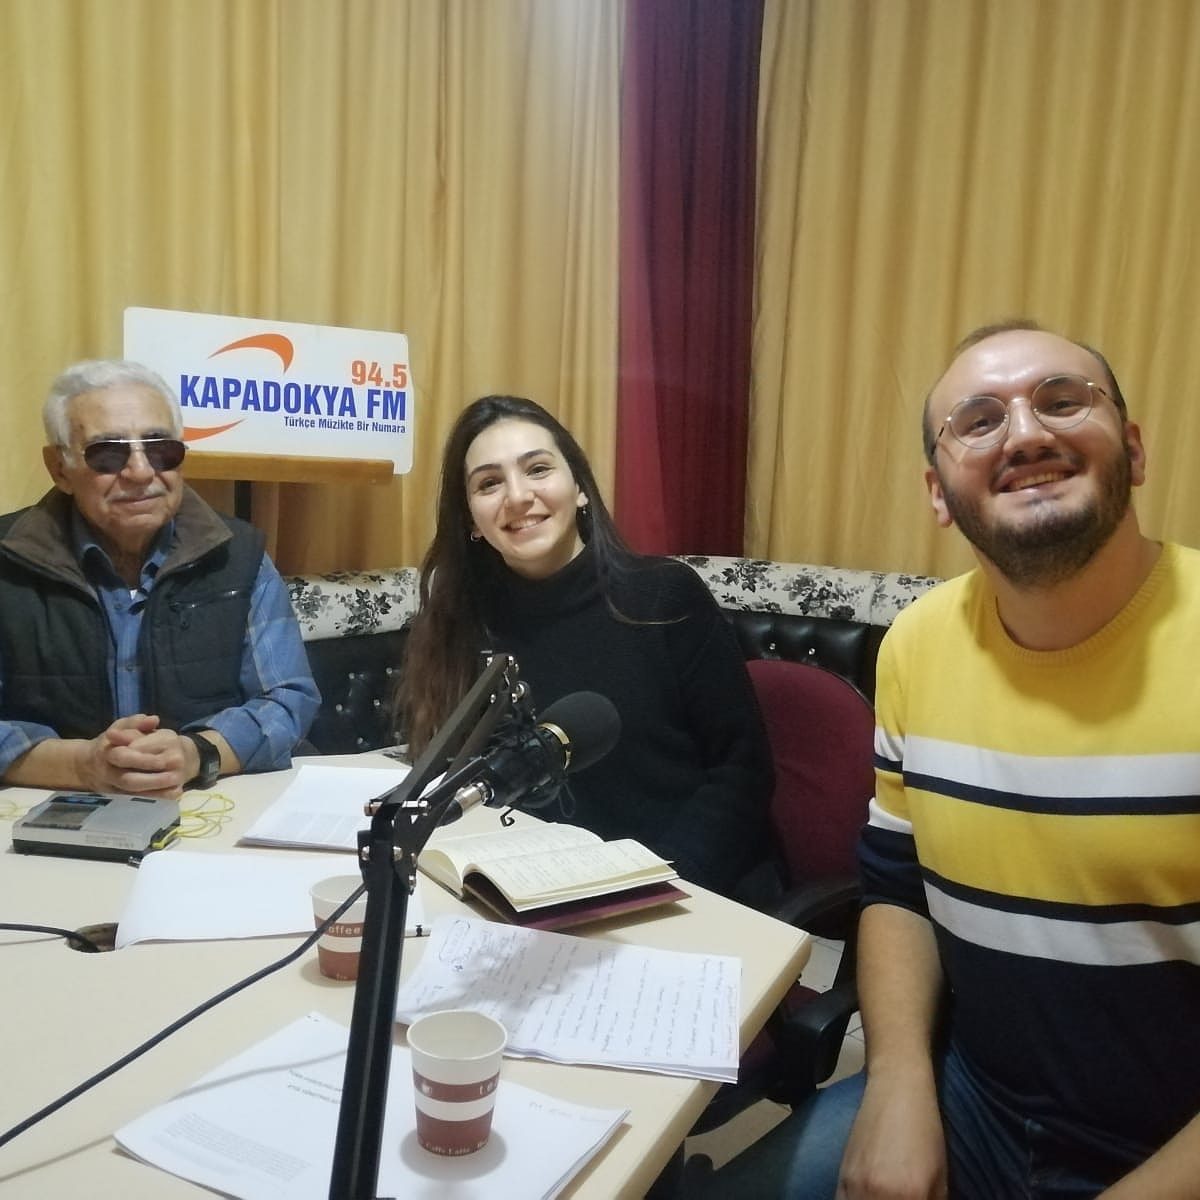 Radyo Kapadokya’da Psikoterapi ve Etik Konuşuldu